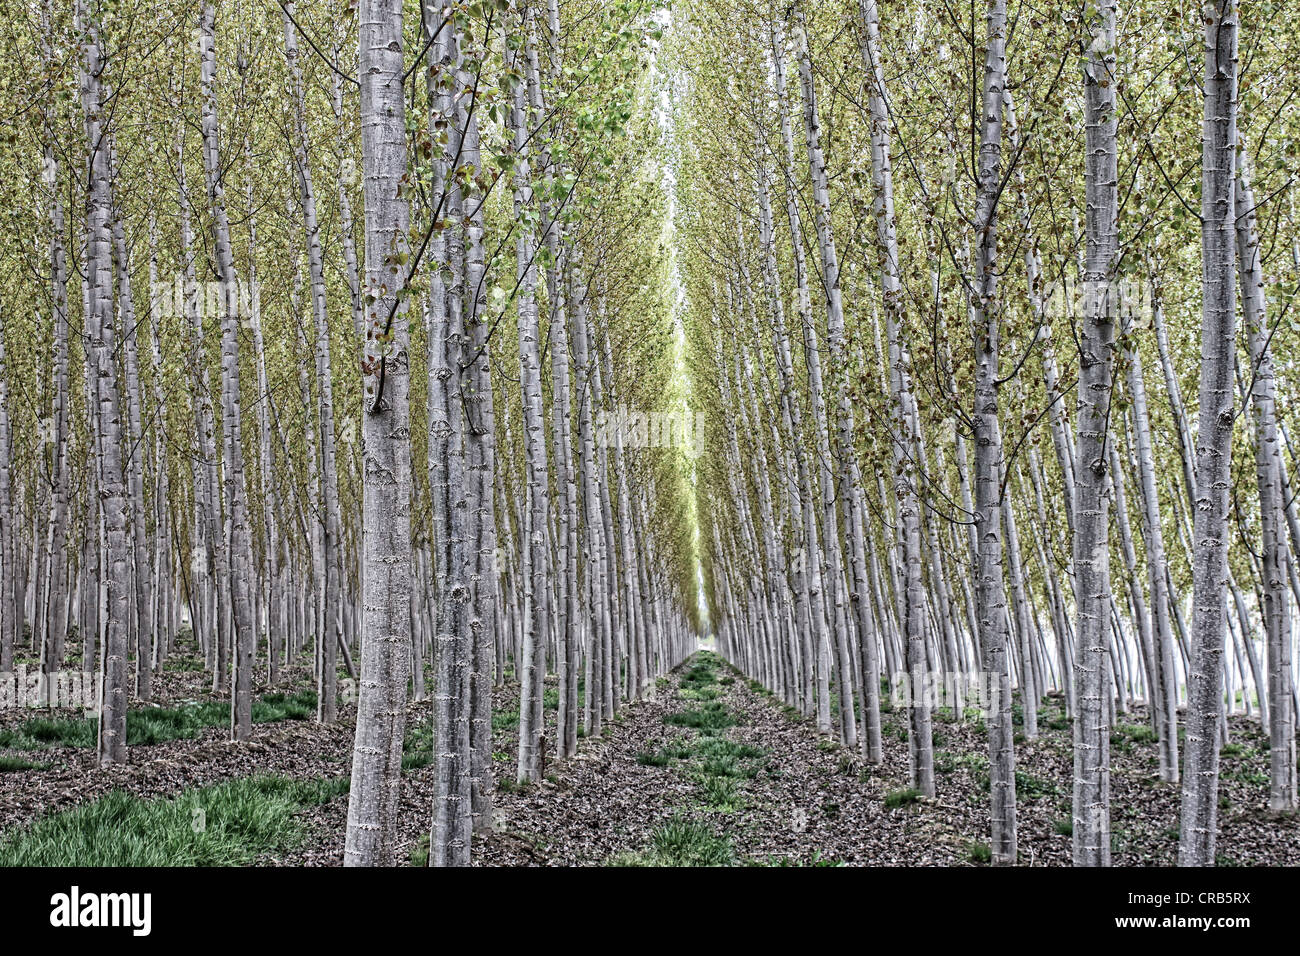 Andalucia,Spain, Plantation of poplar trees near Santa Fe, Granada Stock Photo